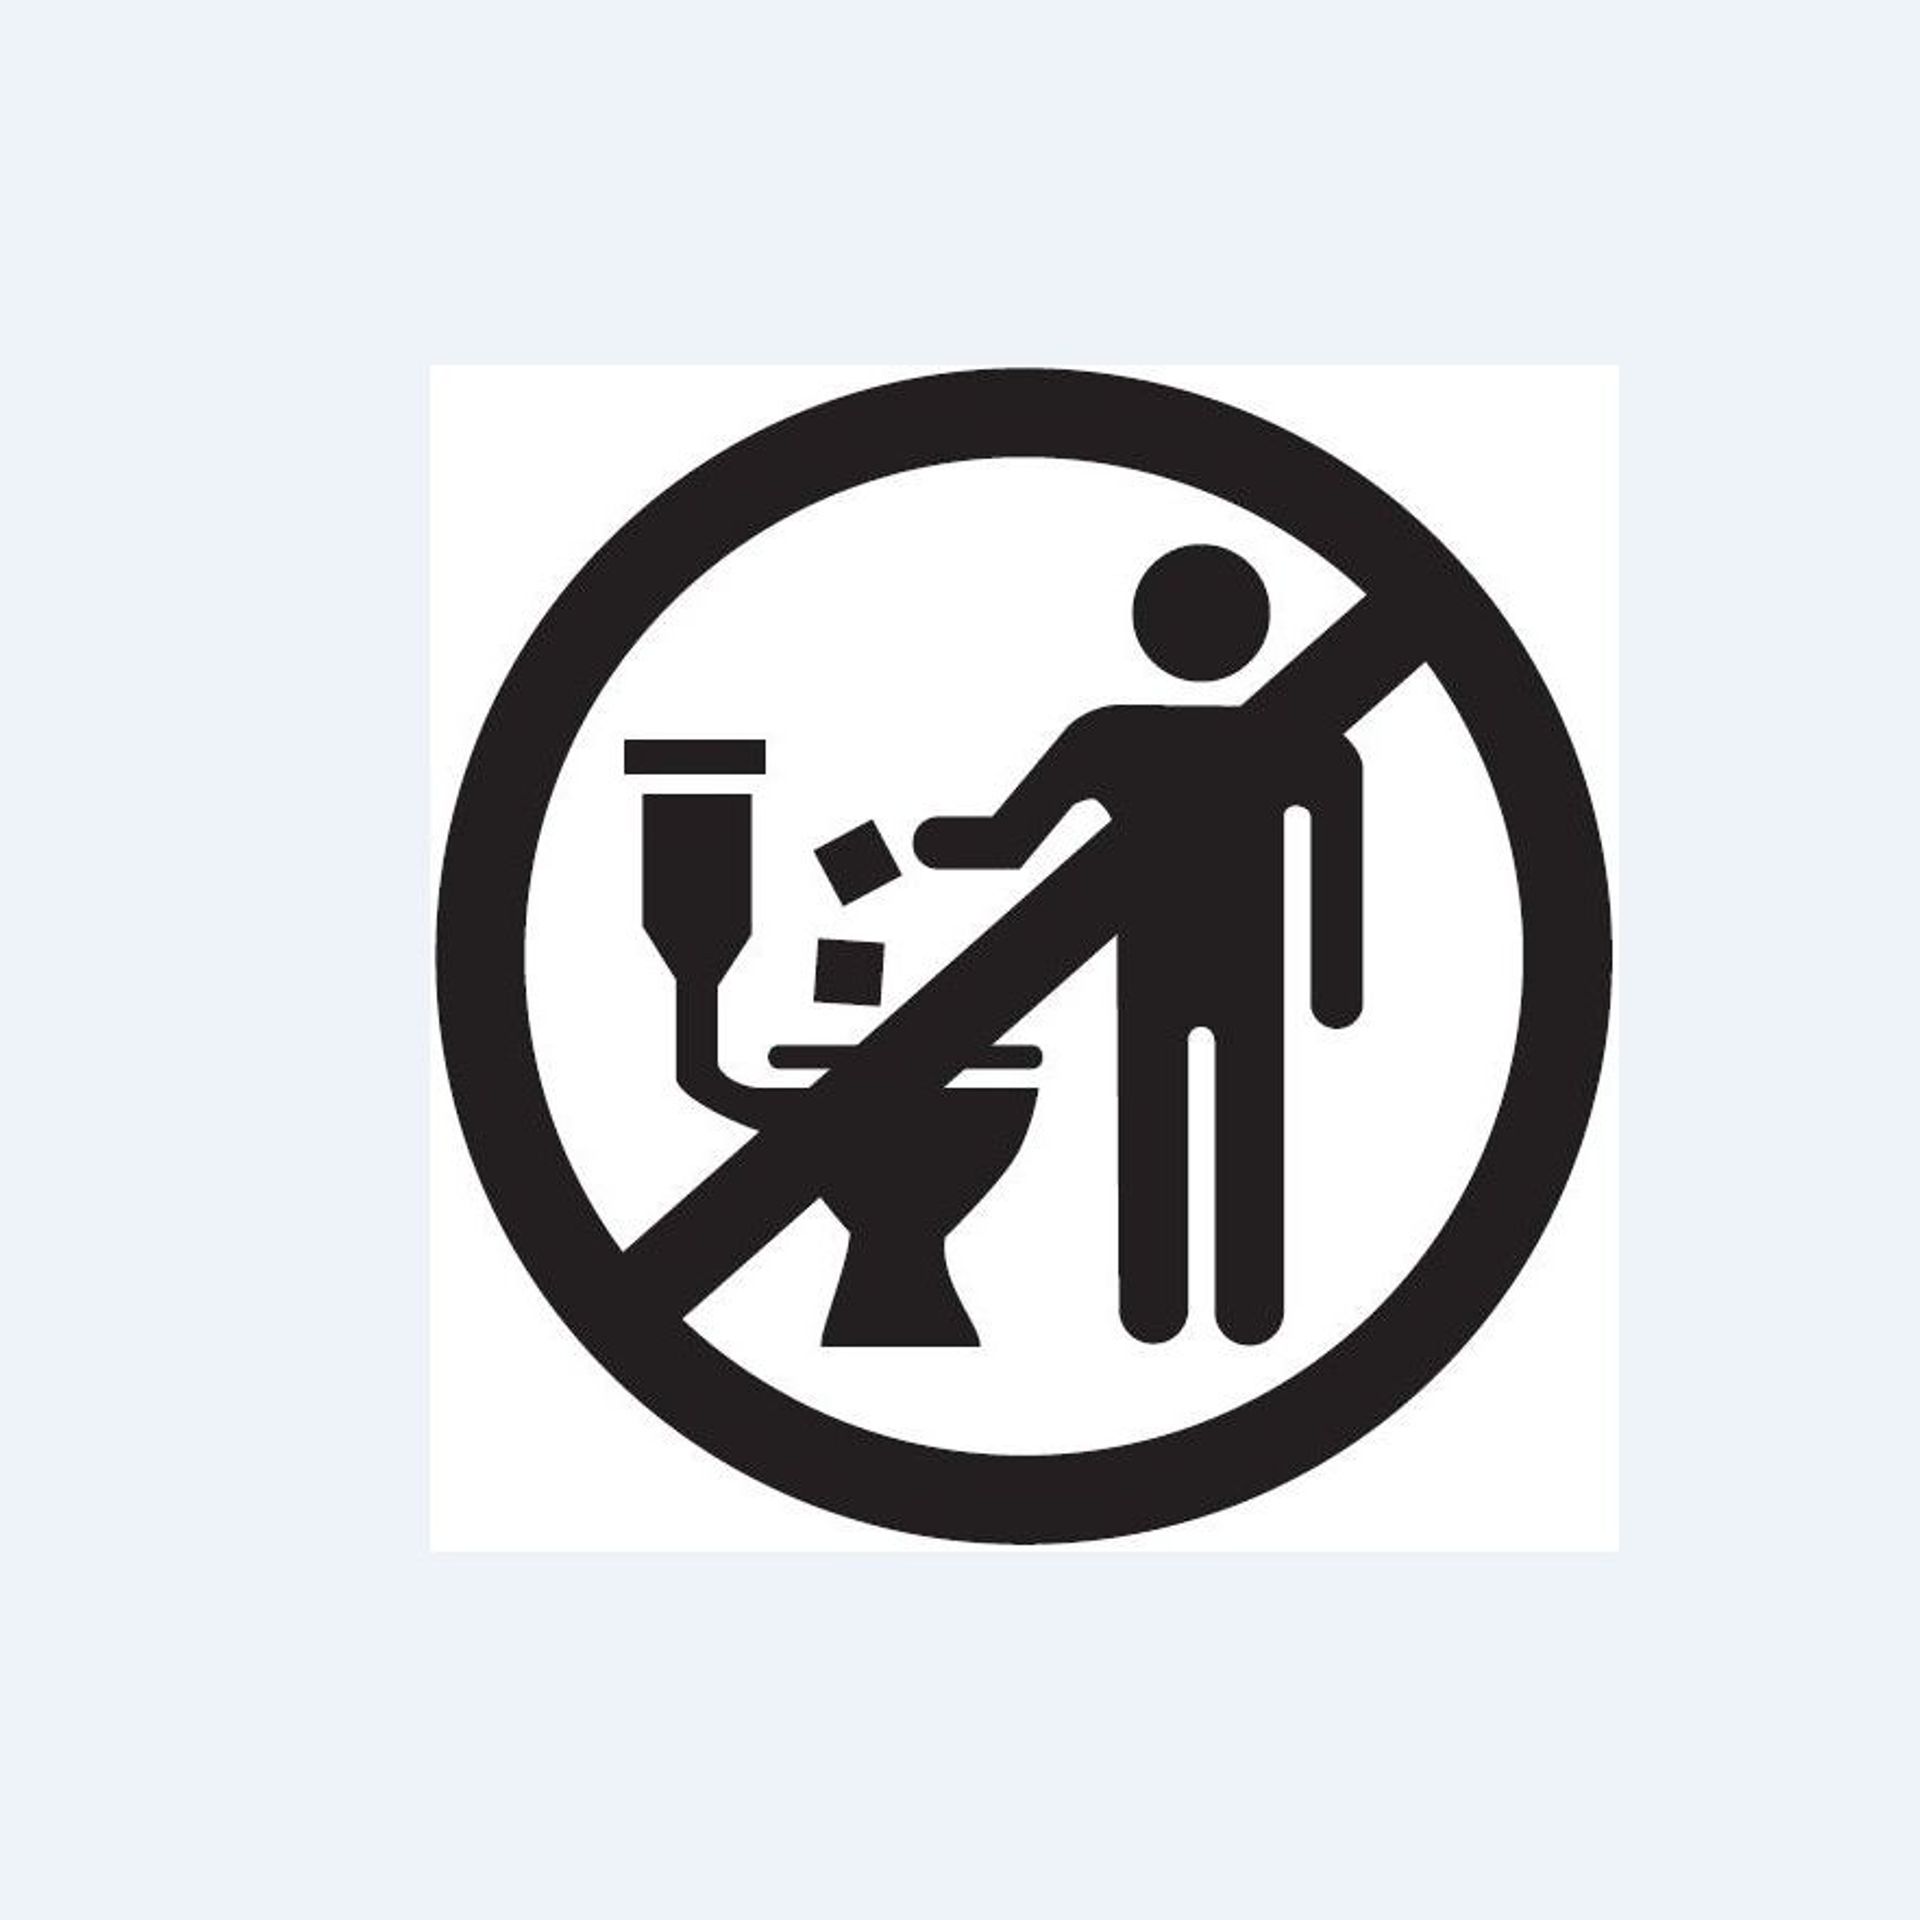 Imprimer : Les lingettes, pas dans les toilettes !